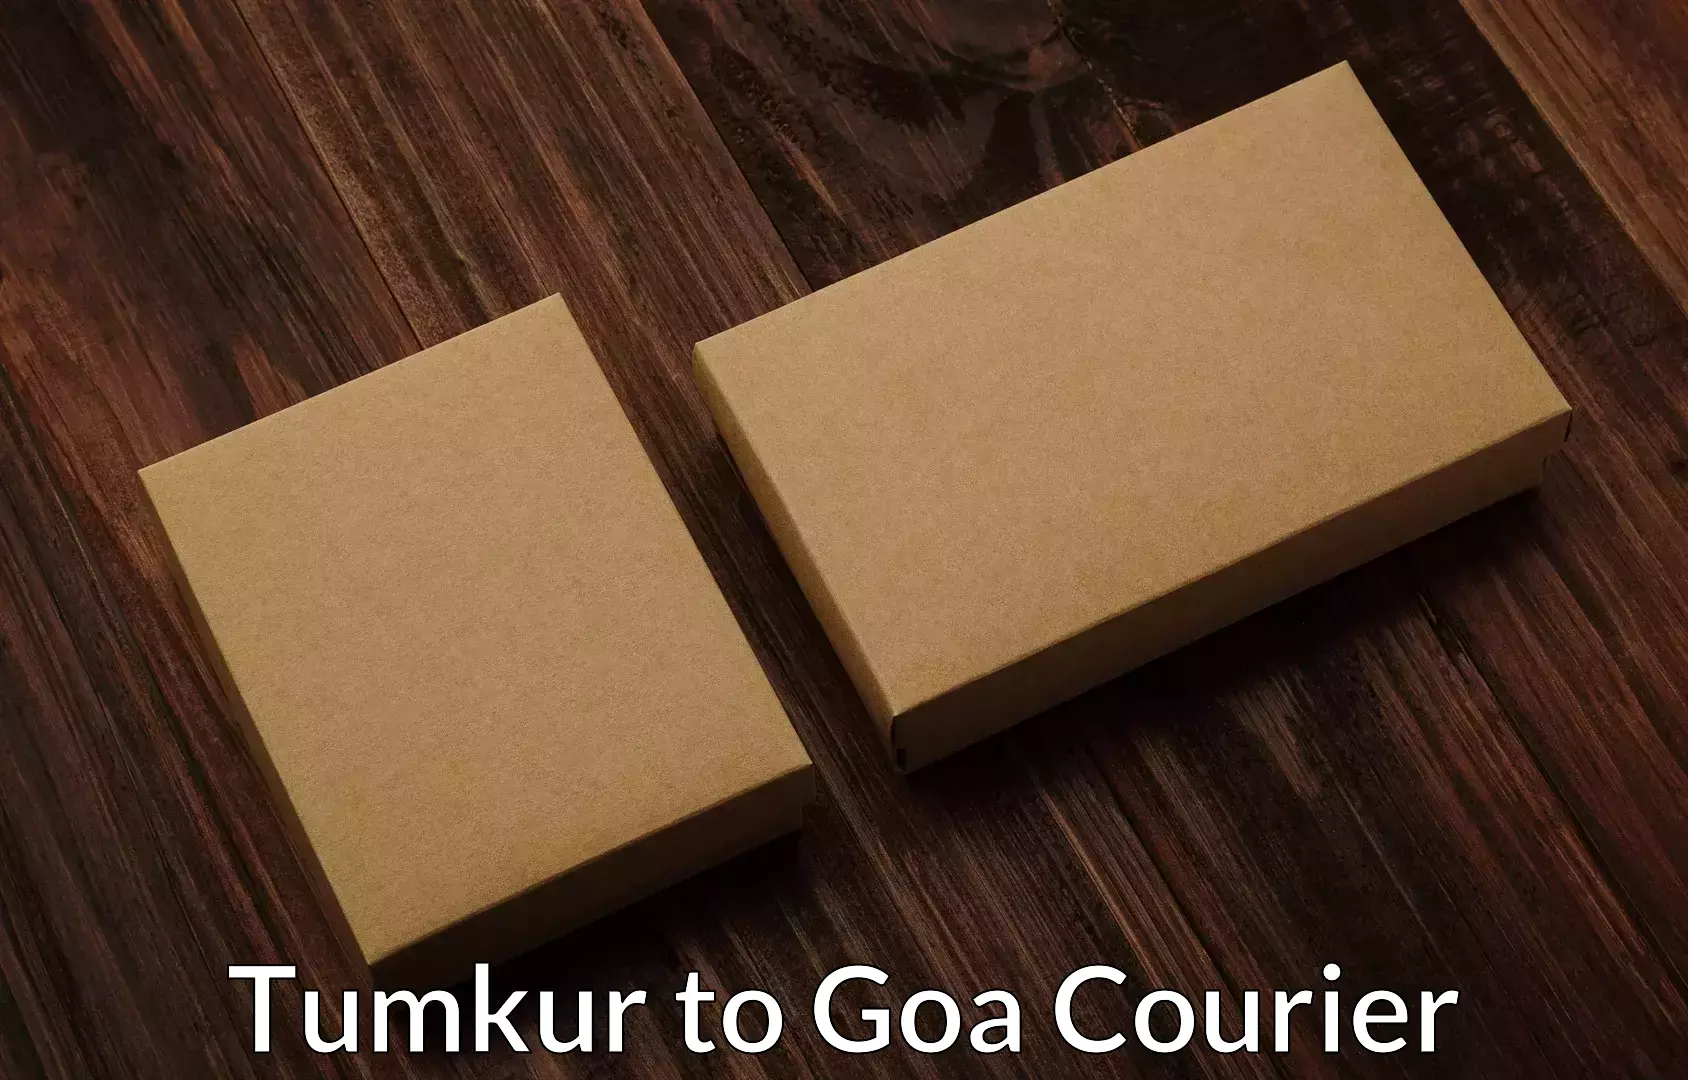 Full-service movers Tumkur to IIT Goa